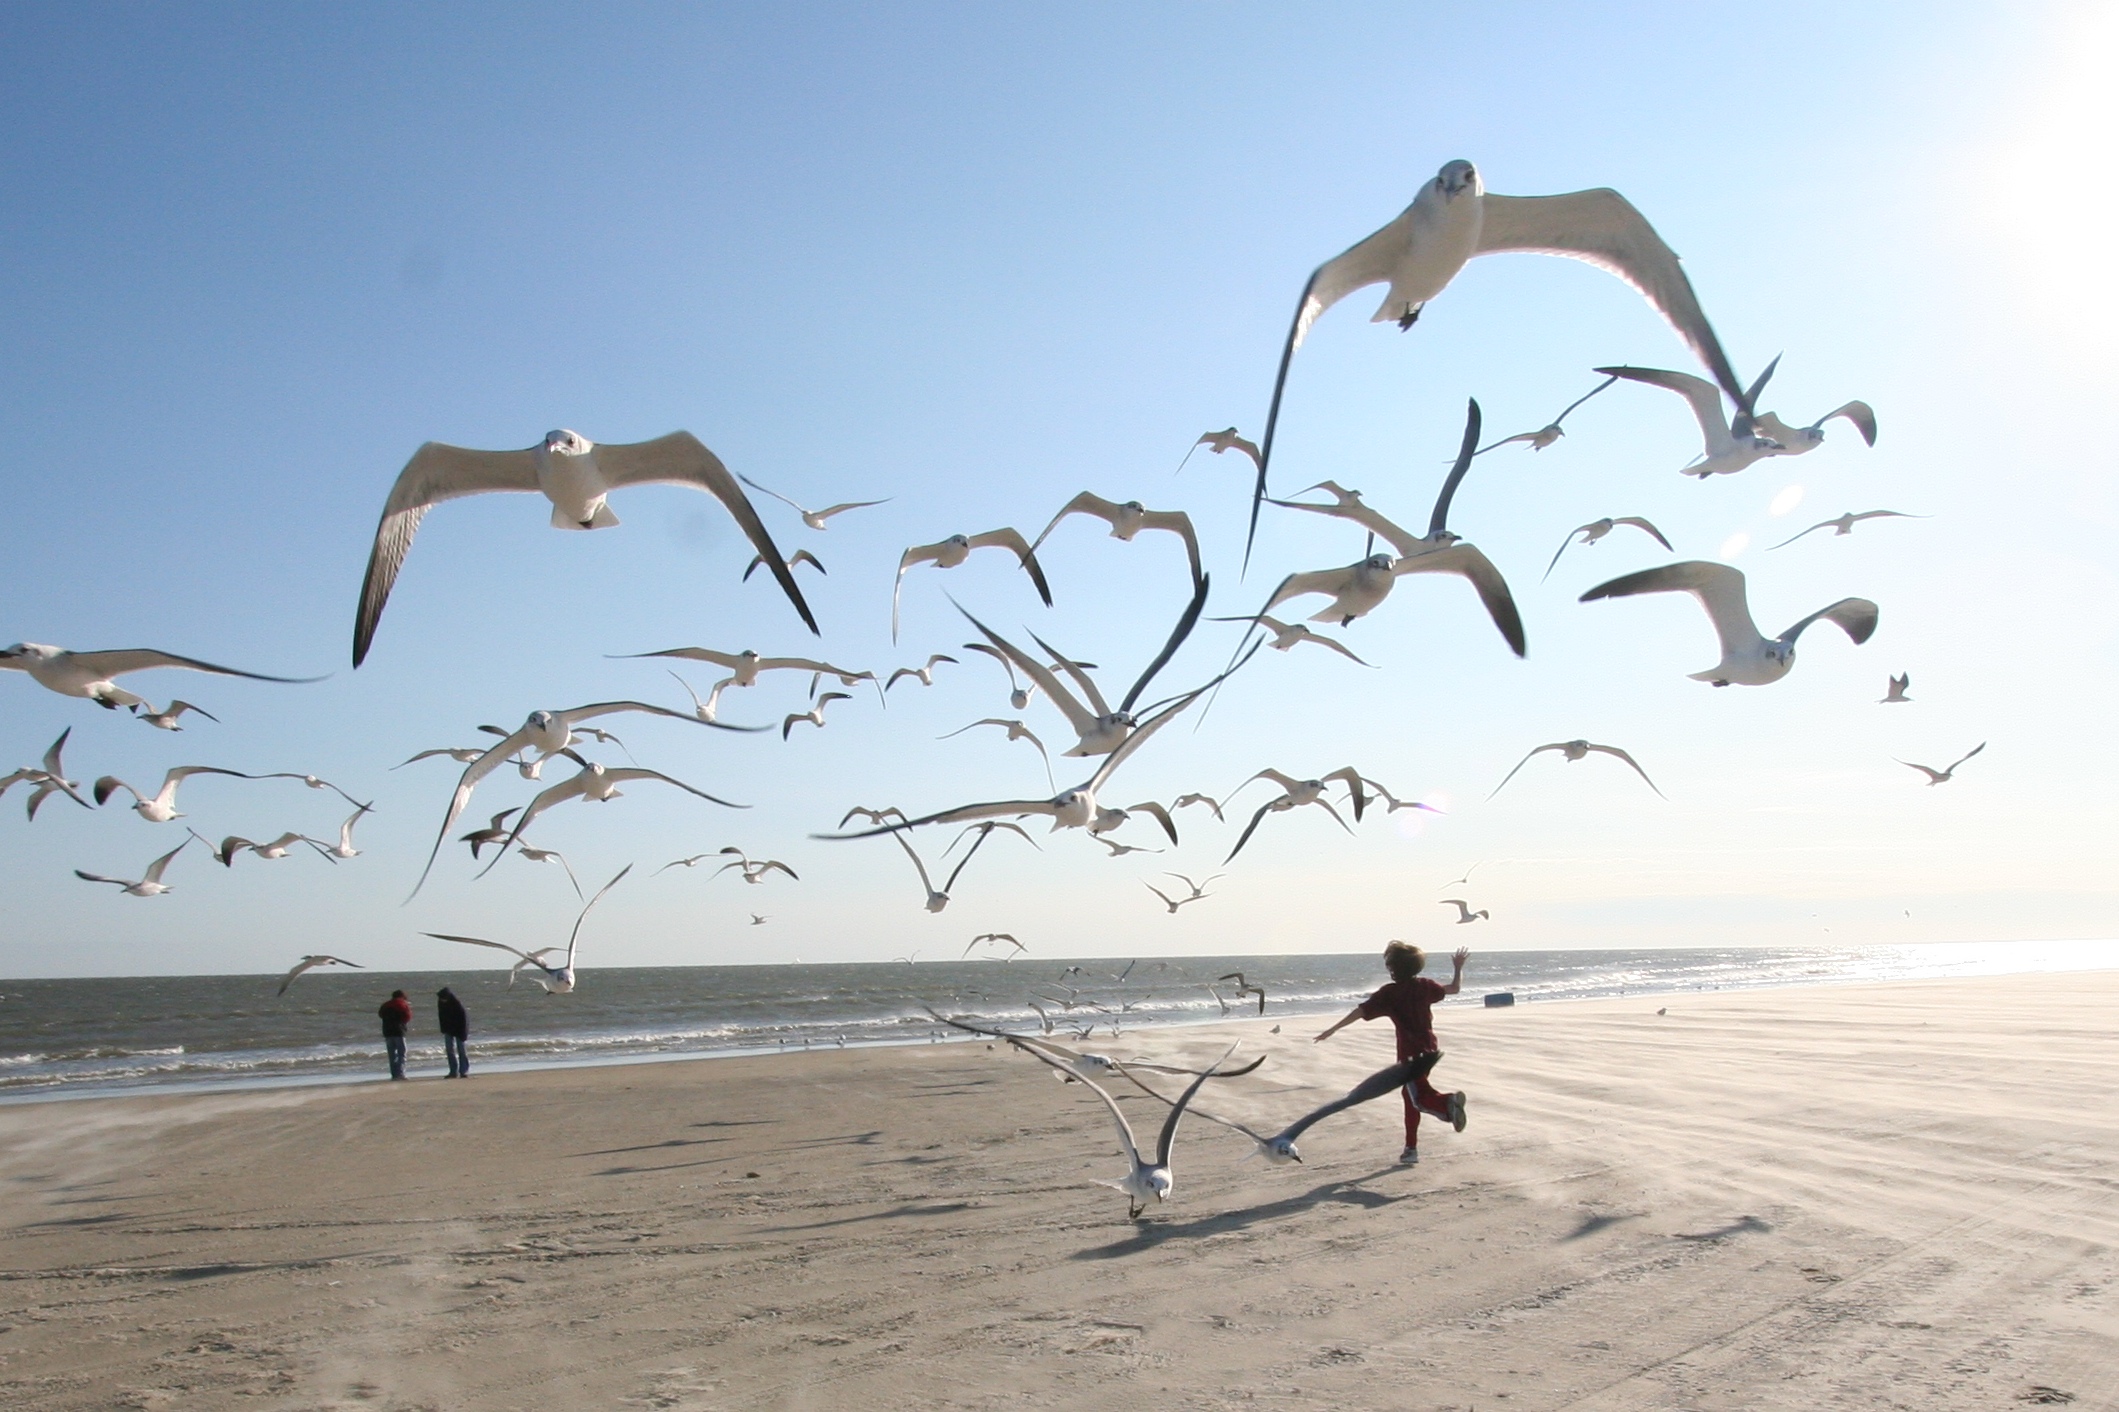 Желаю купаться в счастье. Море, Чайки. Счастье. Птицы над головой. Фотосессия на пляже с чайками.